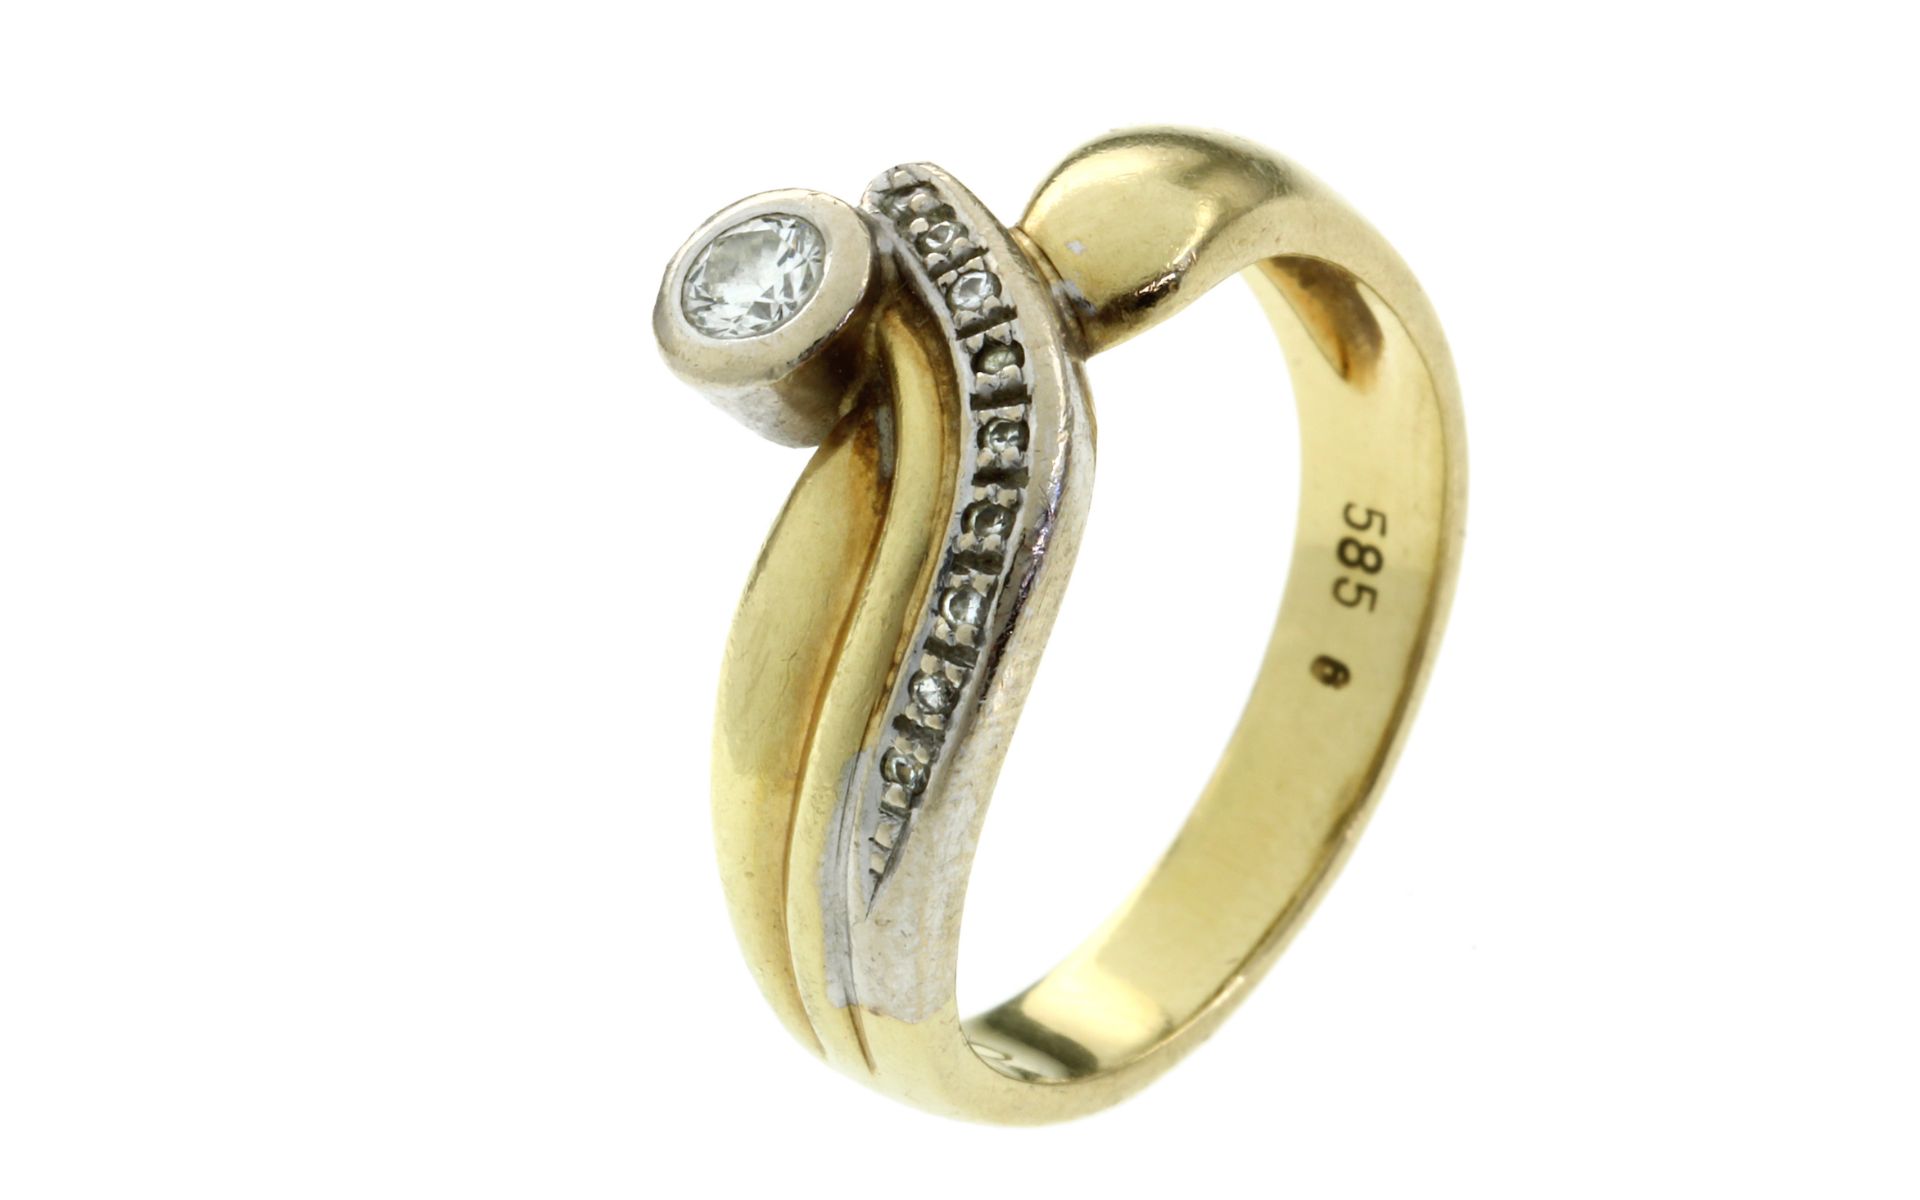 Ring 5,32g 585/- Gelbgold und Weissgold mit Diamant ca. 0,10 ct. und 9 Diamanten zus. ca. 0,09 ct...